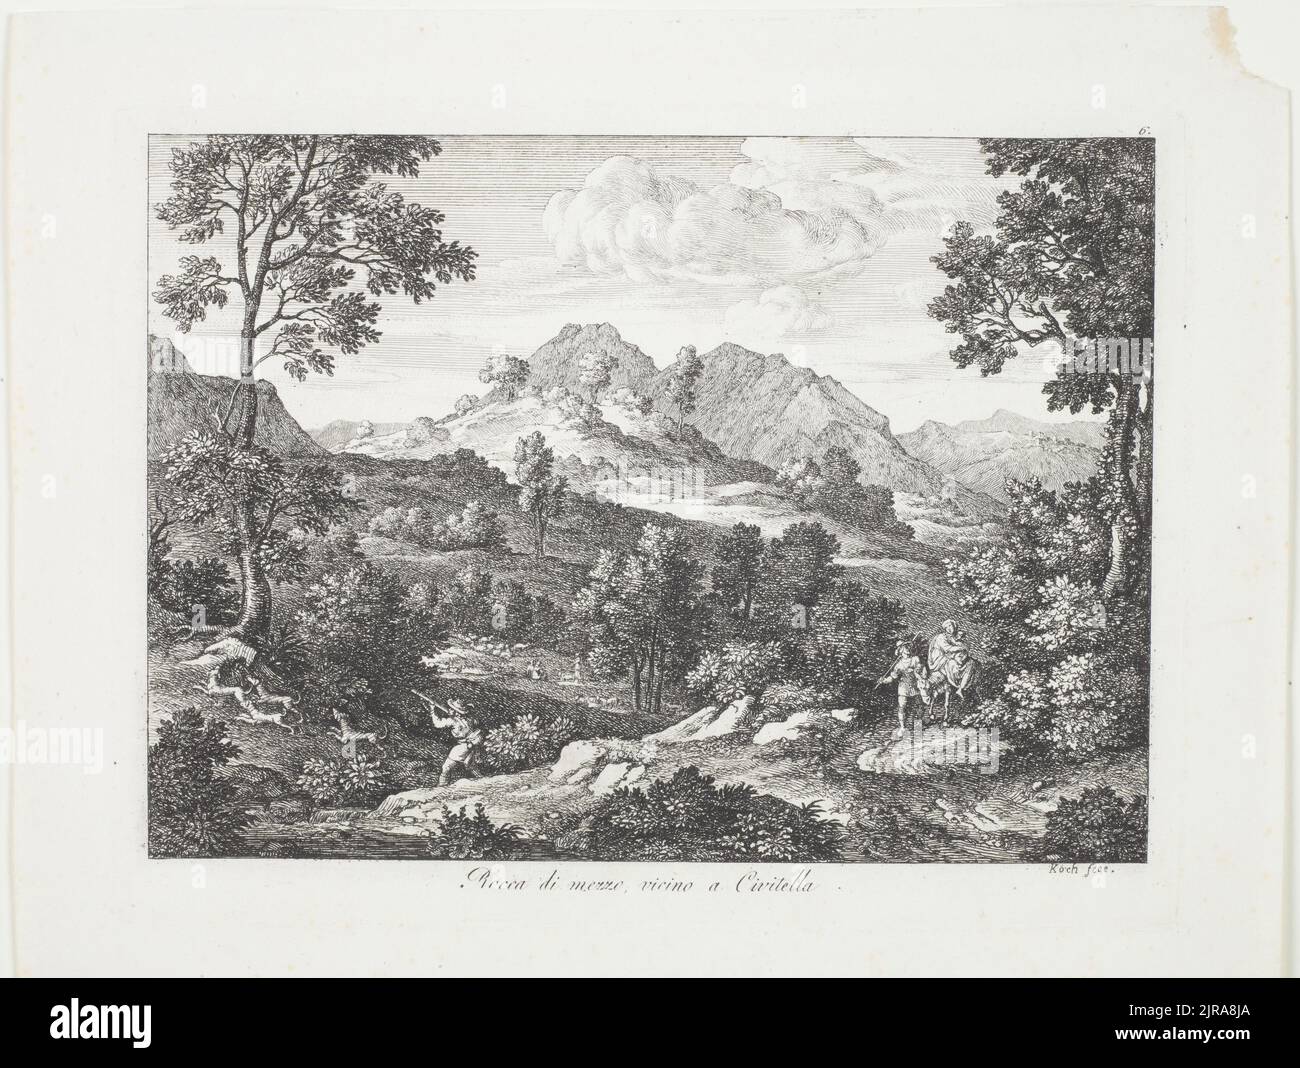 Die Römischen Ansichten (Views of Rome)/ Rocca di Mezzo, vicino a Civitella., 1810, Italy, by Joseph Koch. Gift of Bishop Monrad, 1869. Stock Photo